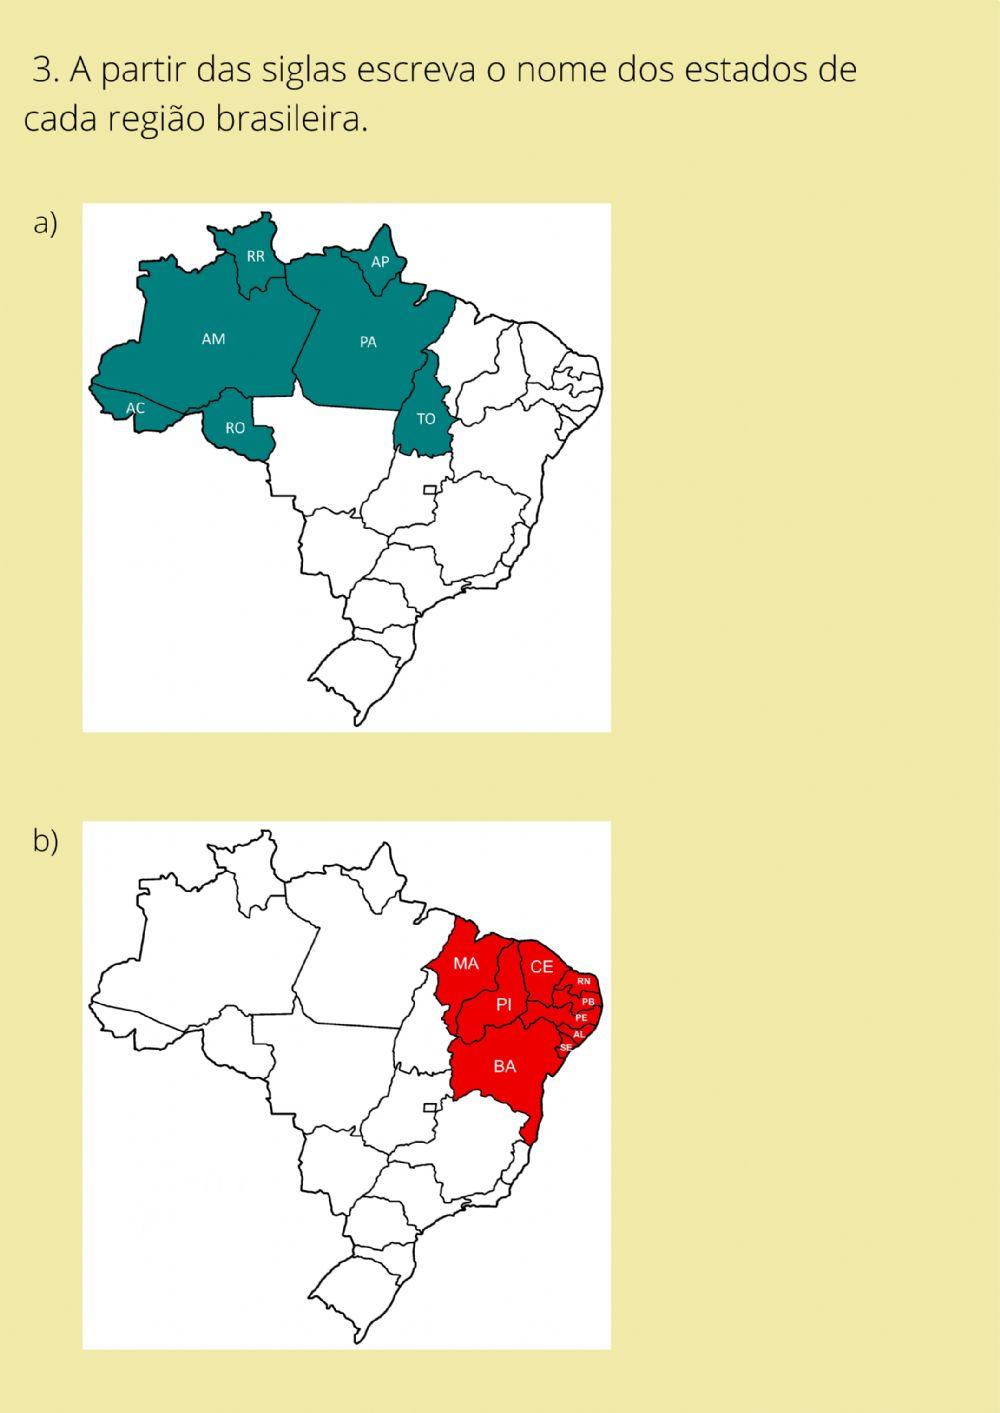 Regionalizações do Brasil